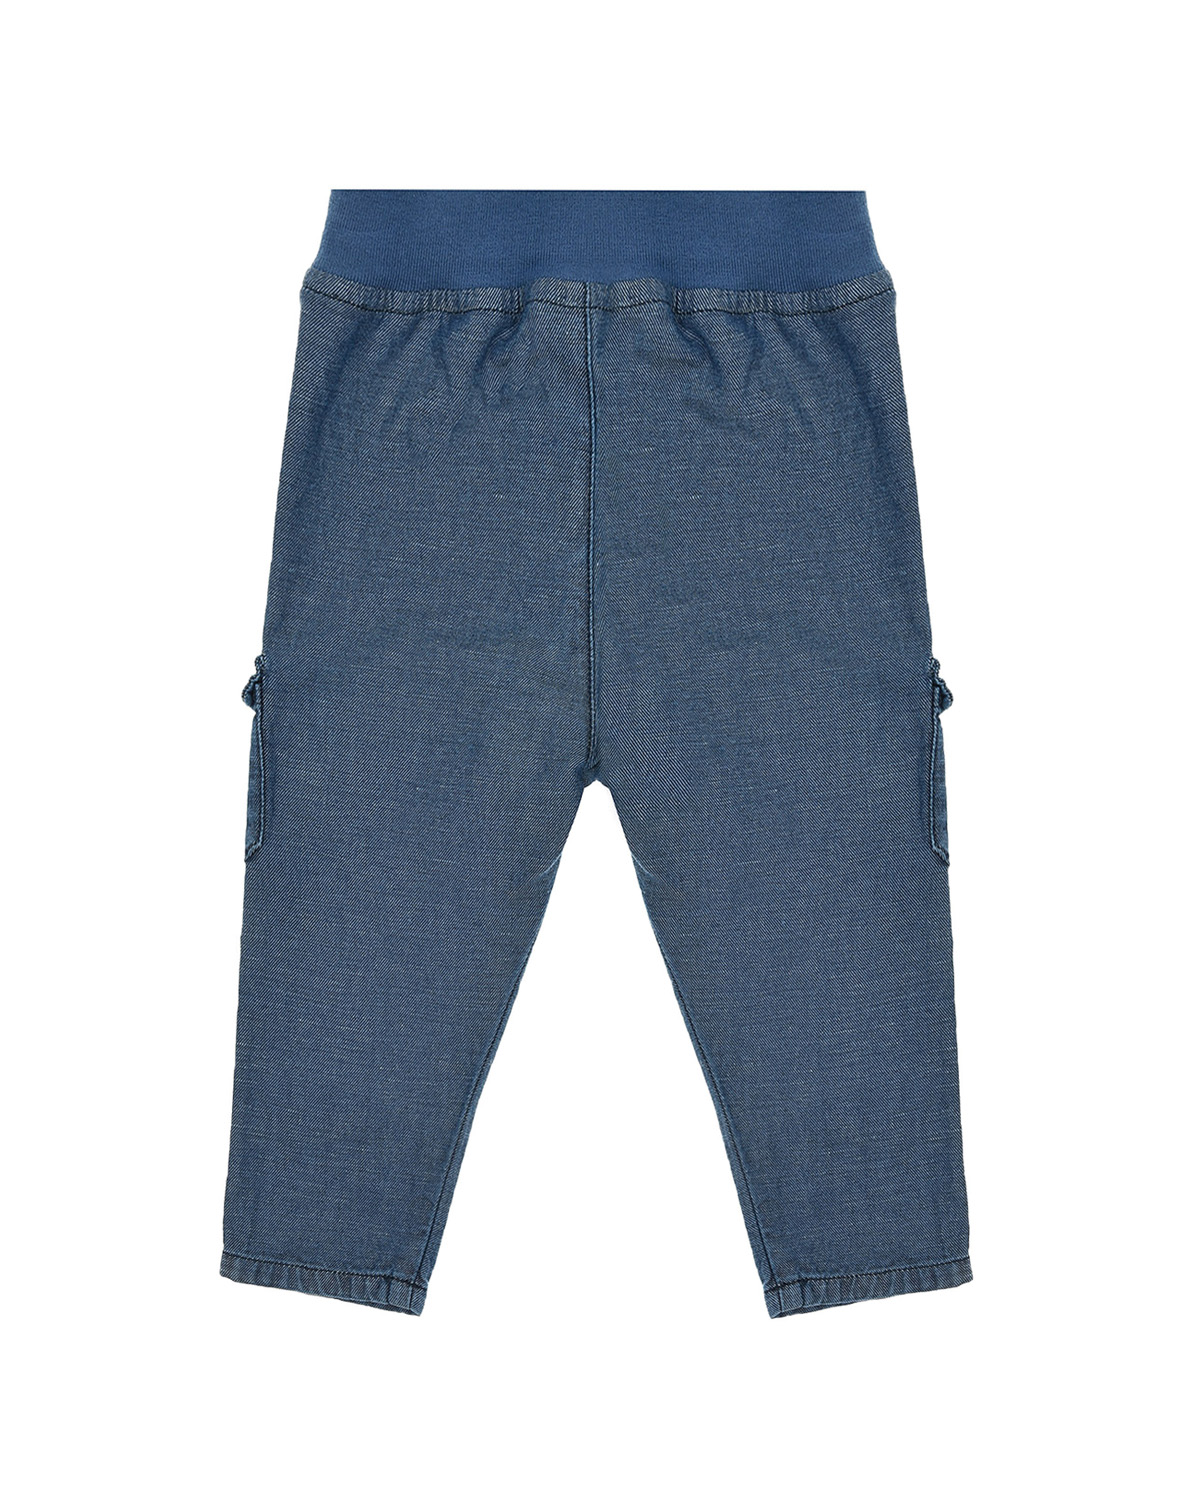 Джинсовые брюки с карманами карго Tartine et Chocolat детские, размер 80, цвет синий - фото 2